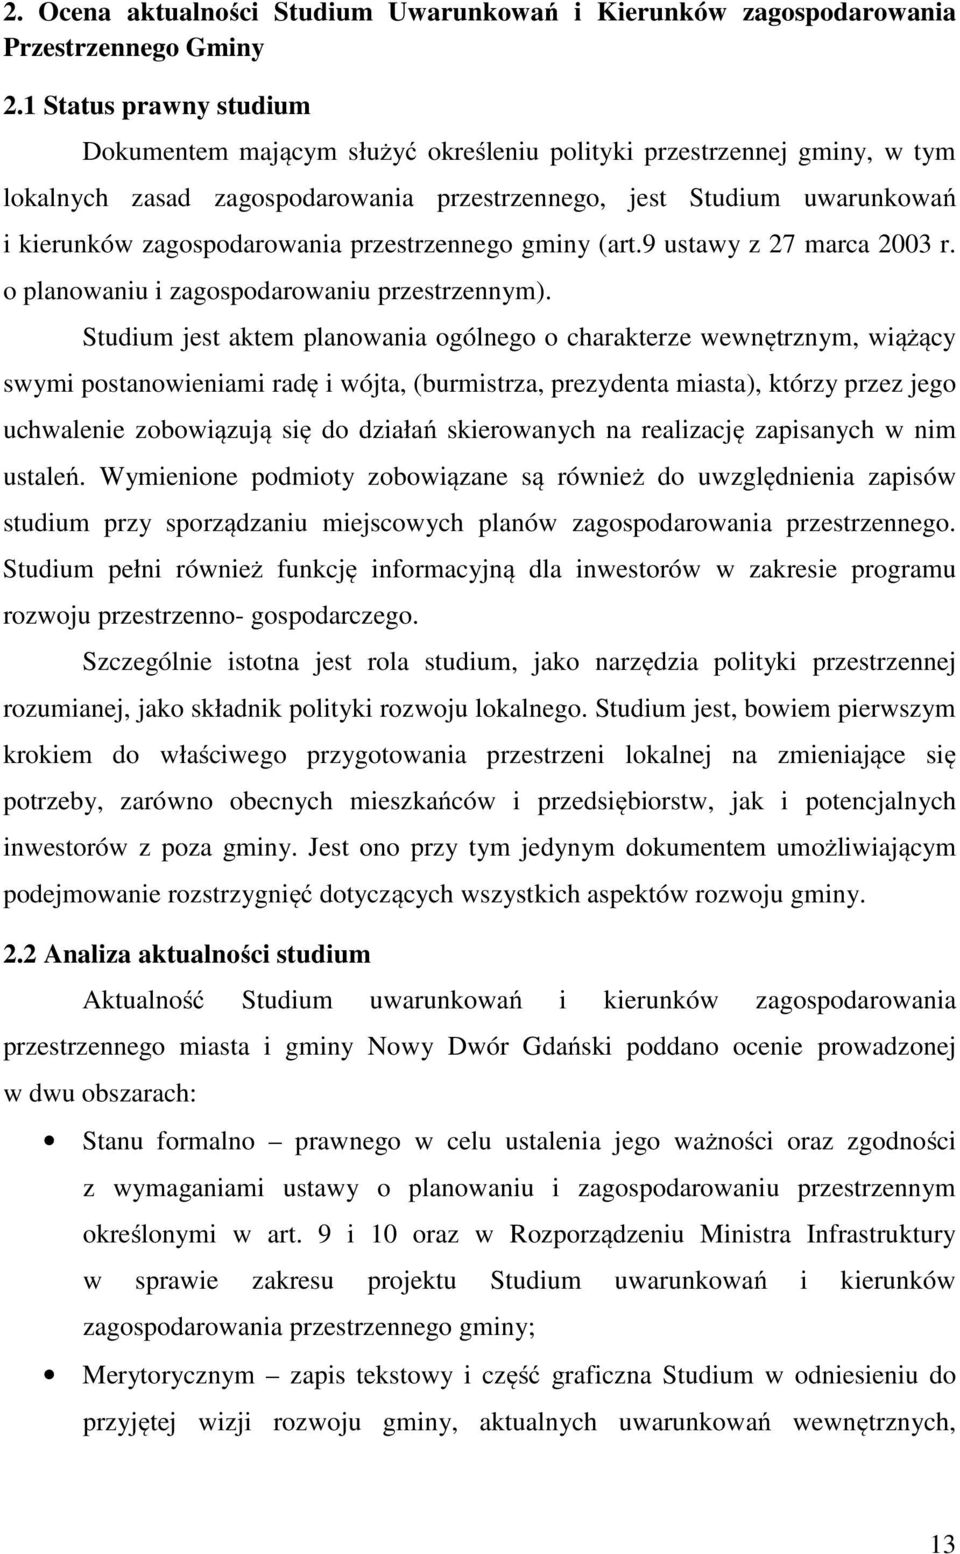 przestrzennego gminy (art.9 ustawy z 27 marca 2003 r. o planowaniu i zagospodarowaniu przestrzennym).